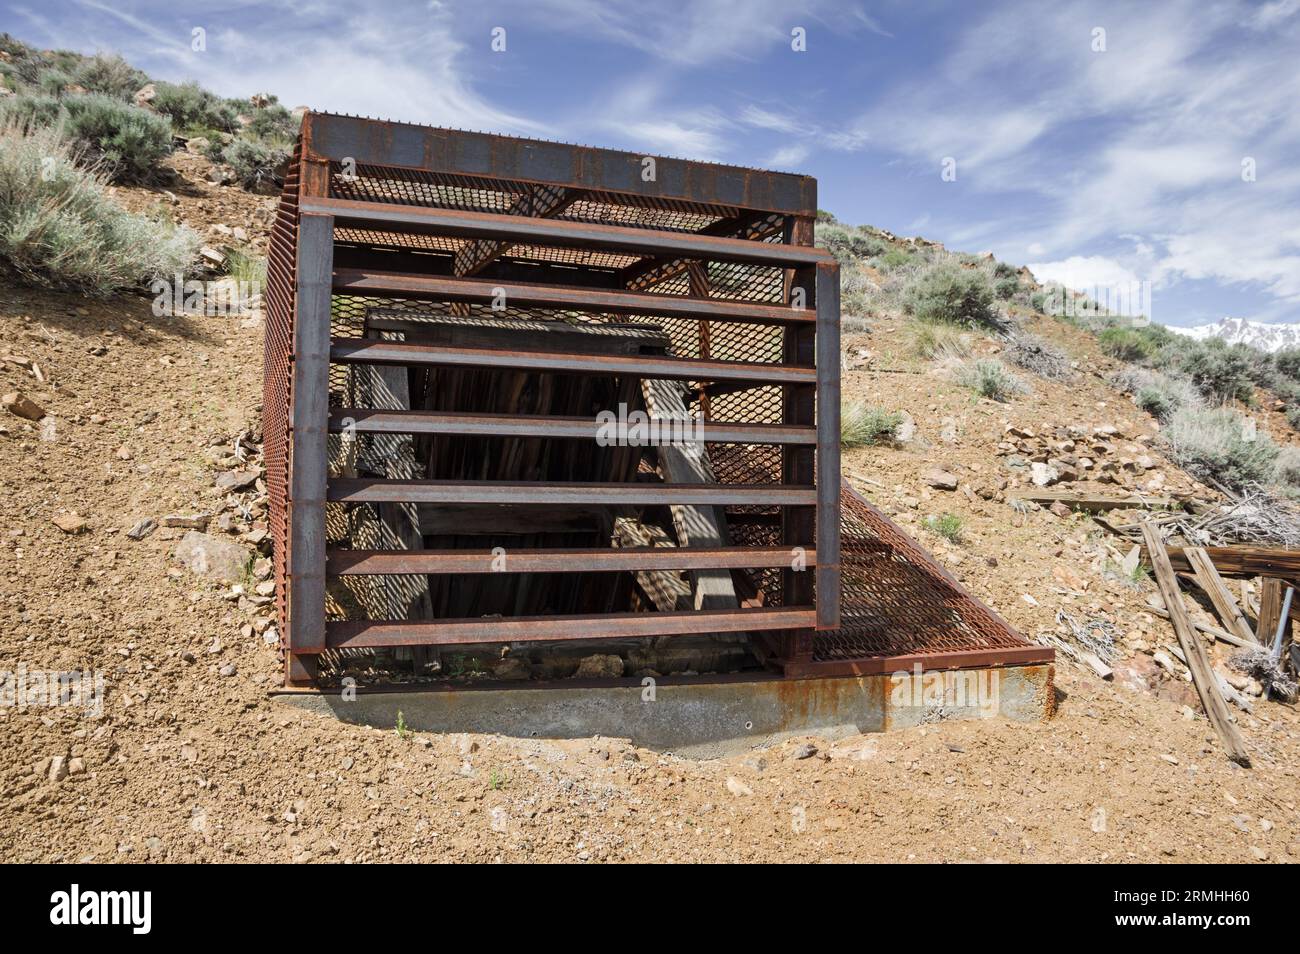 ancien puits de mine de tungstène recouvert d'une cage en acier pour empêcher l'entrée Banque D'Images